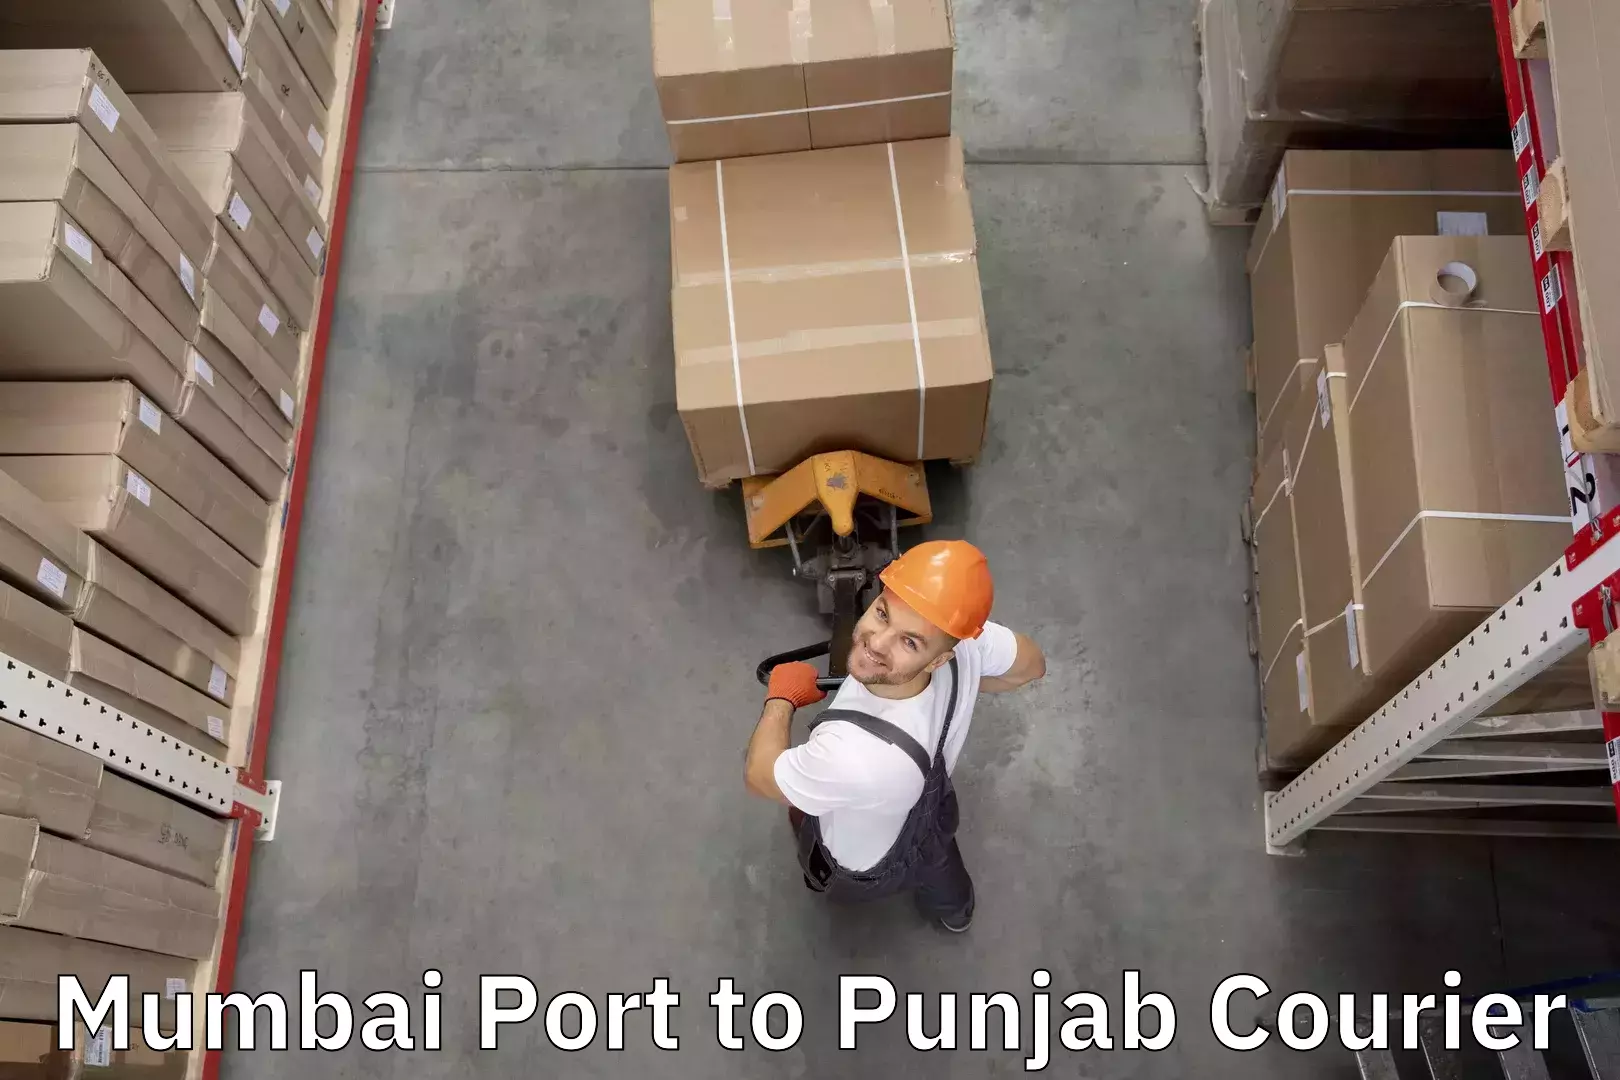 Baggage transport coordination Mumbai Port to Punjab